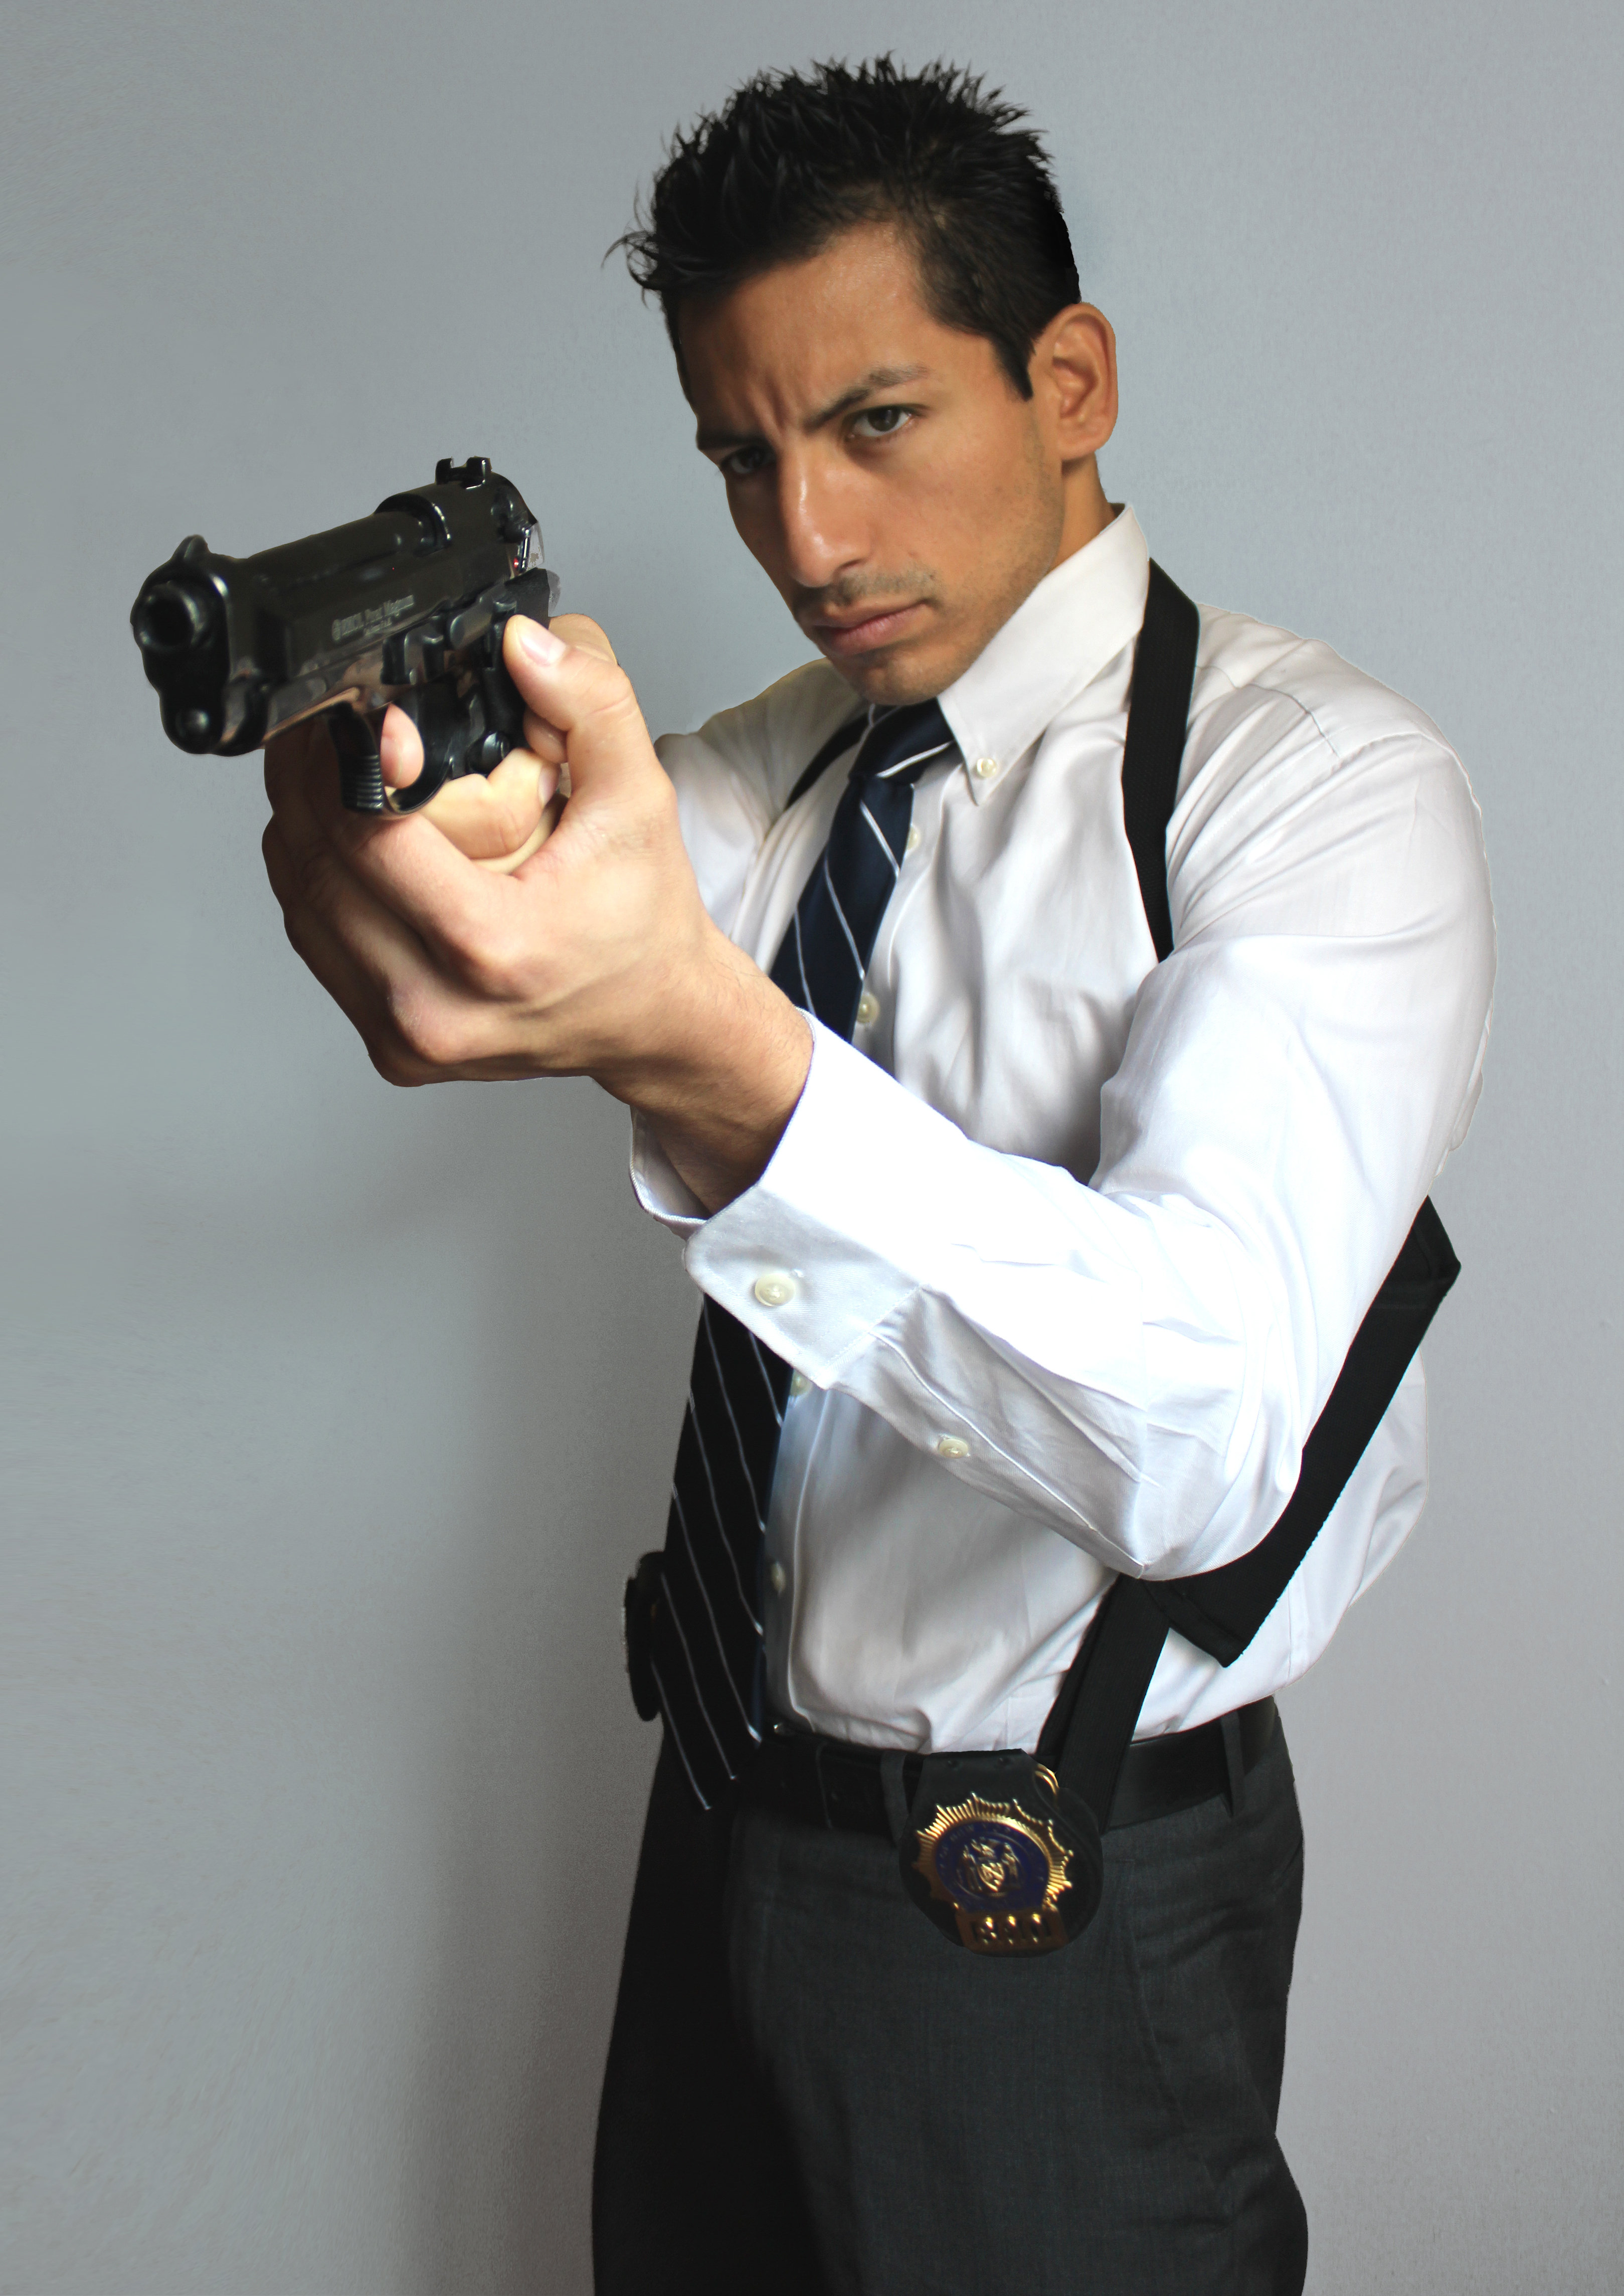 Detective Alexander Cortes (Alex Kruz) draws his weapon.